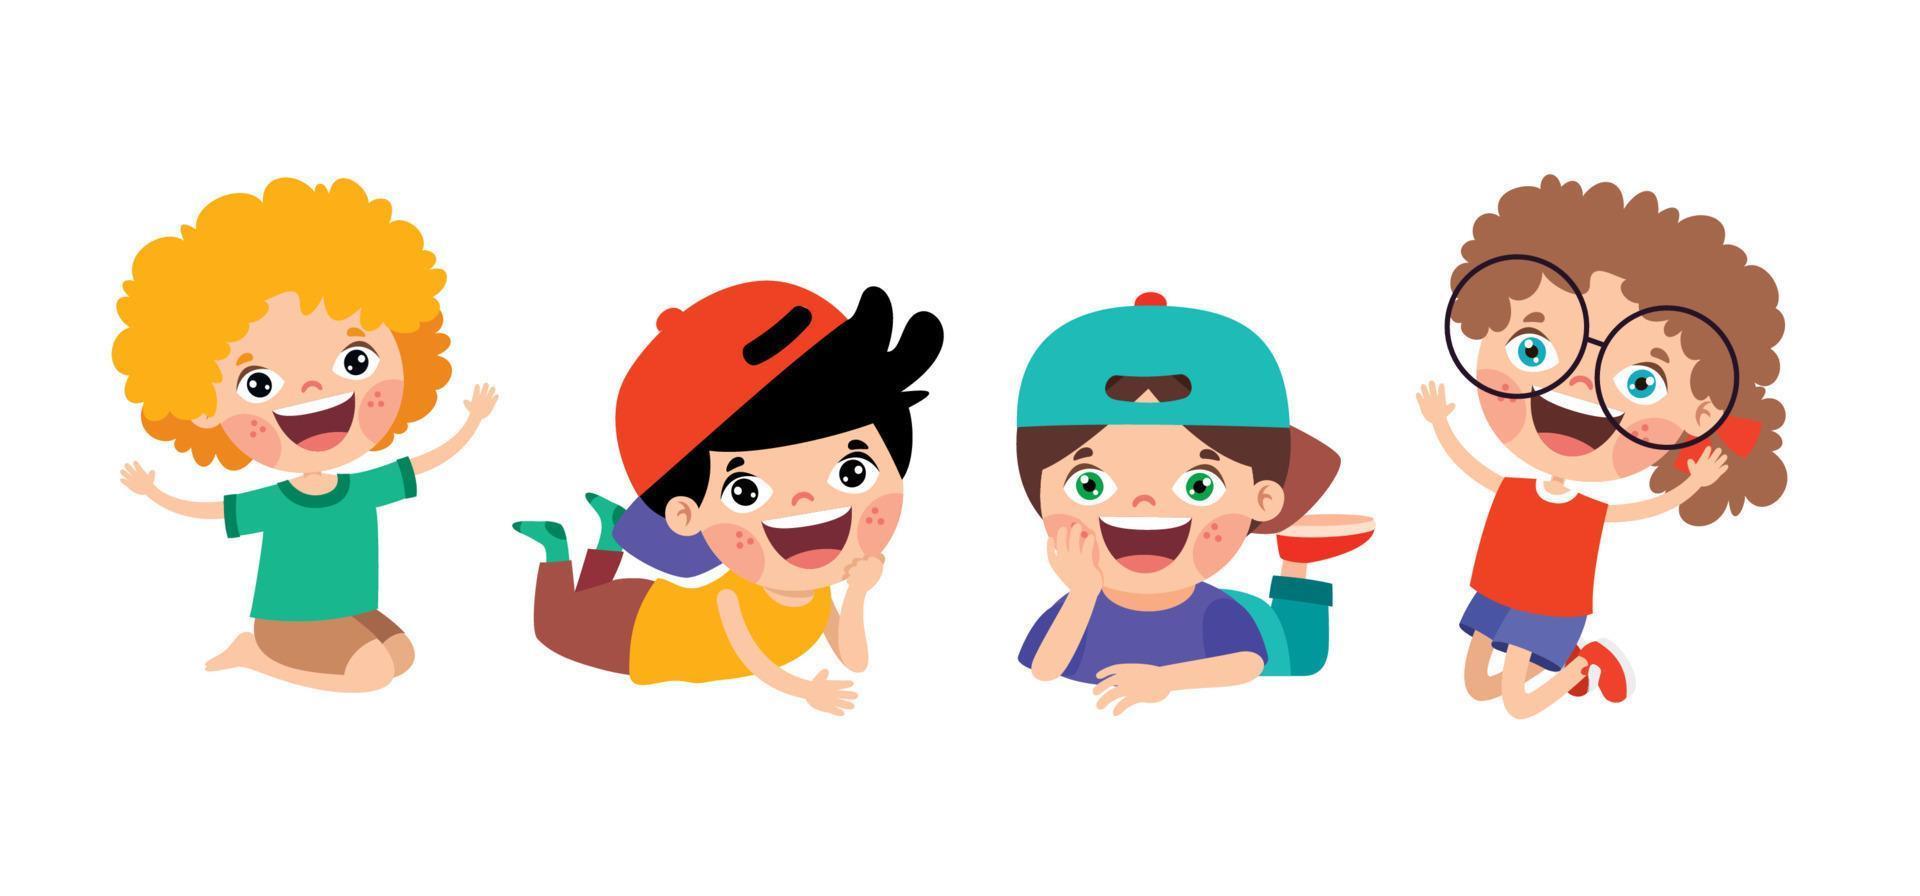 Happy Cartoon Children Characters Sitting vector